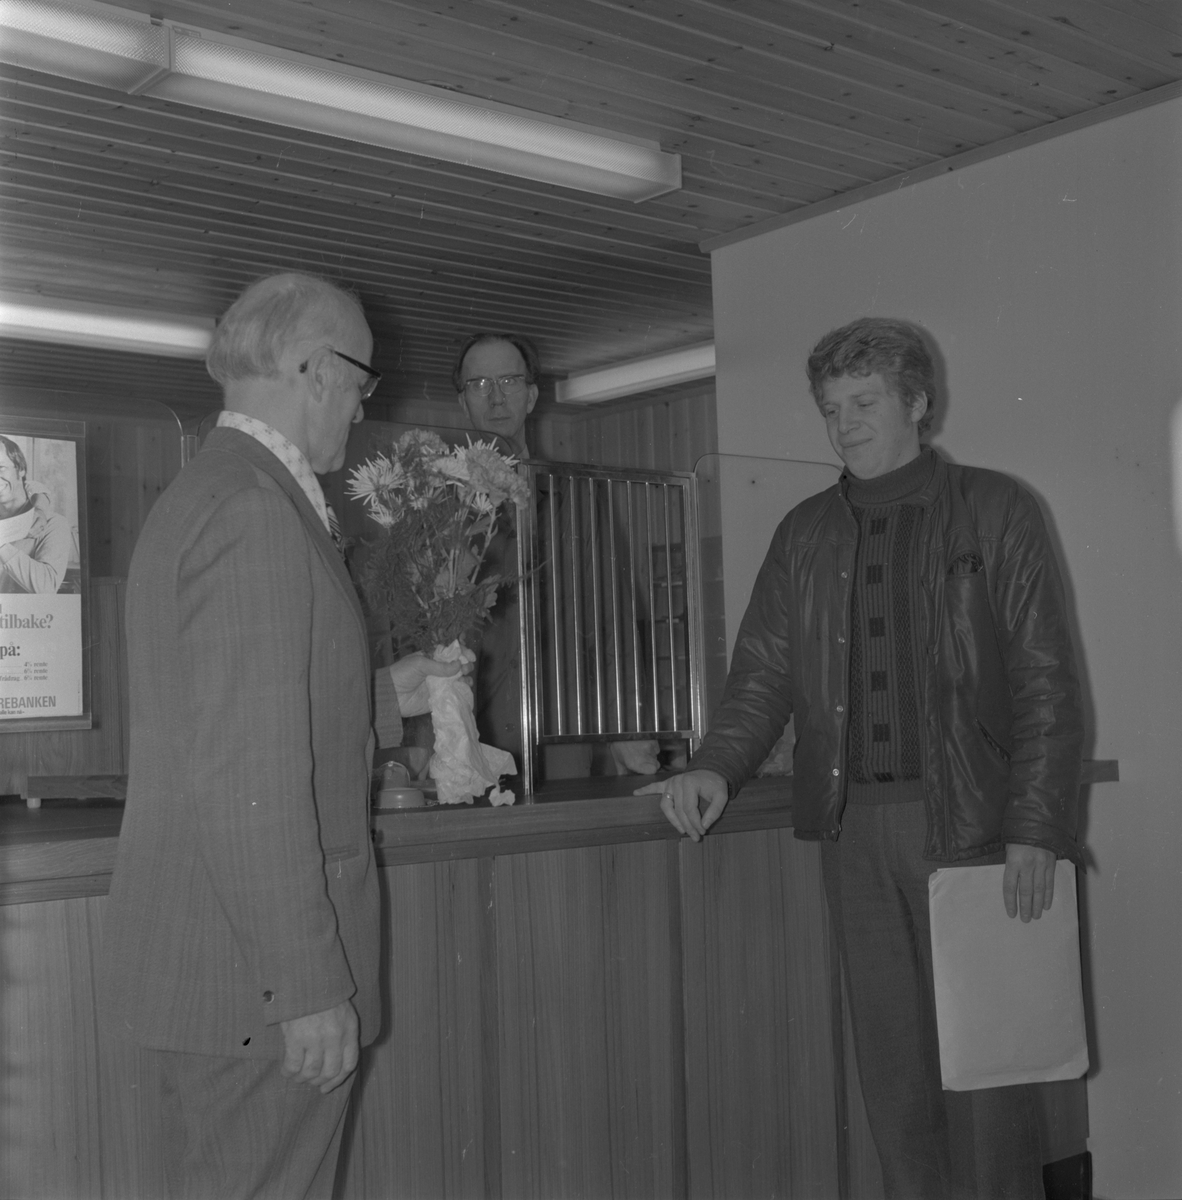 Opninga av det nye postlokalet på Kvassanes i Ølensvåg, 1974. Utdeling av blomster til første kunde. Frå venstre: postsjef Mønichen frå Haugesund, poststyrar Brekke og første kunde Noralf Matre frå Ølen.